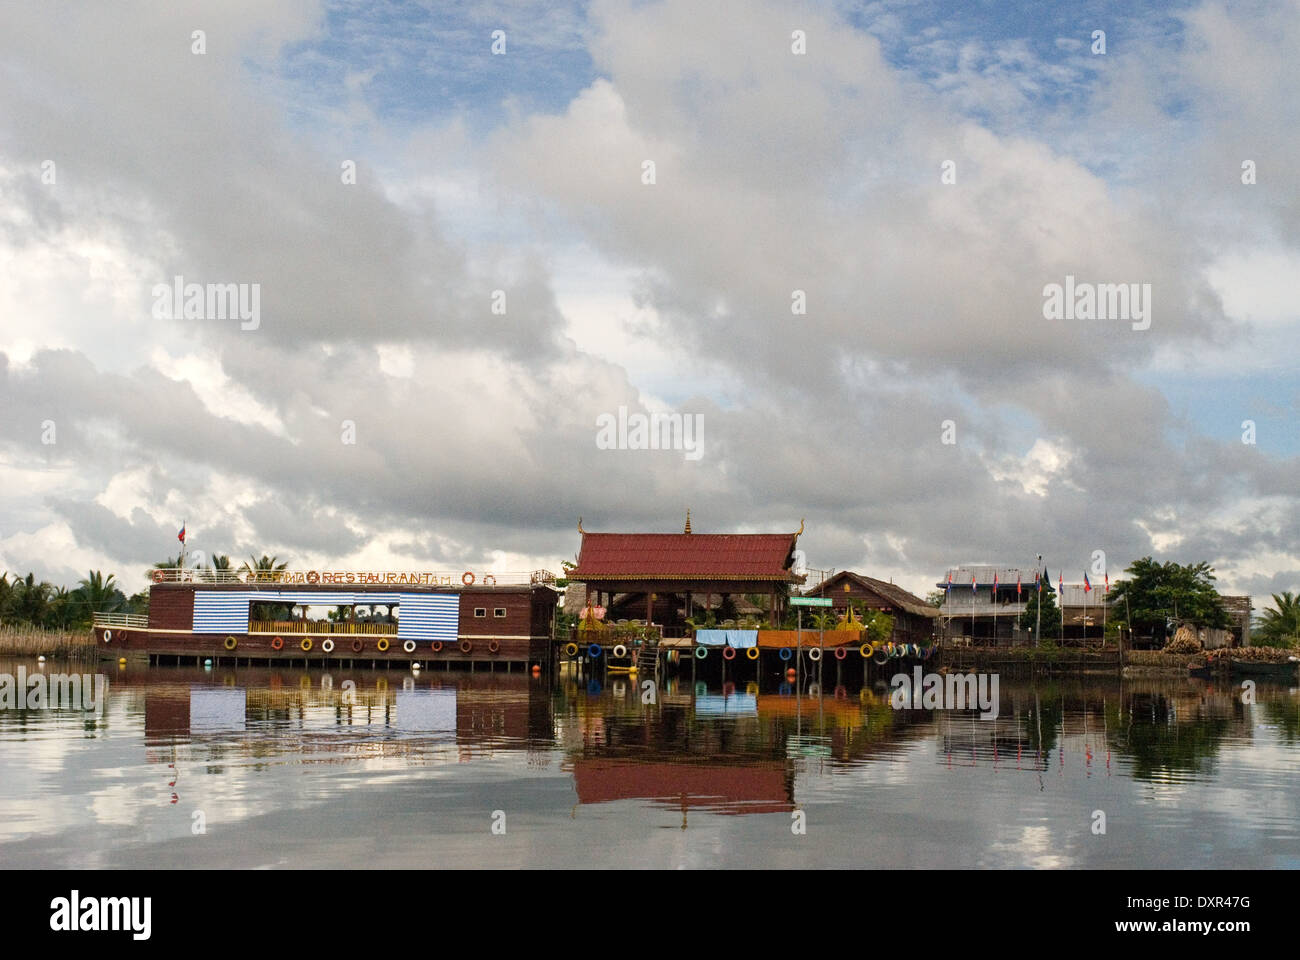 Schwimmendes Restaurant im Ream Nationalpark Boot. Ream National Park liegt 18 Kilometer von der Innenstadt von Sihanoukville, in Richtung Phn Stockfoto